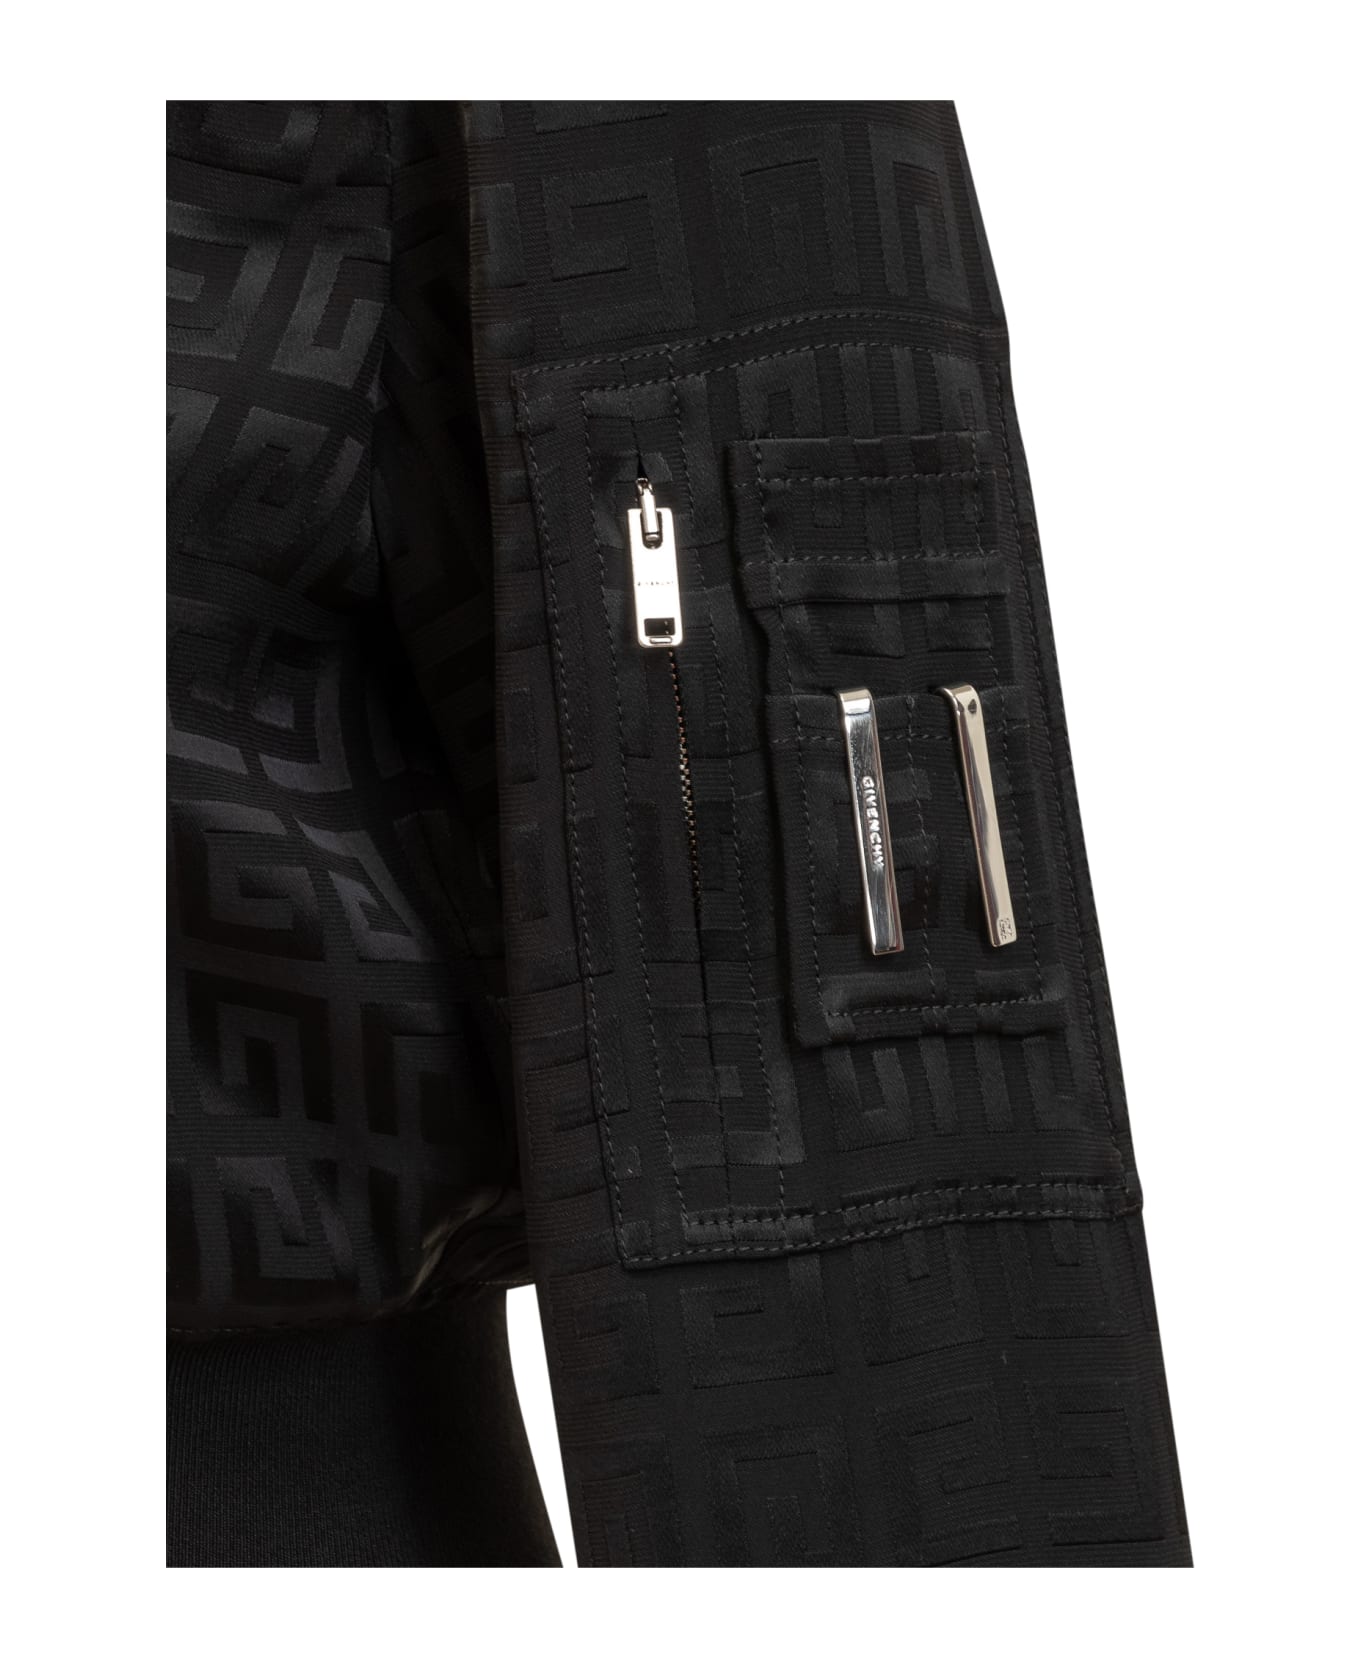 Givenchy 4g Bomber Jacket - Black